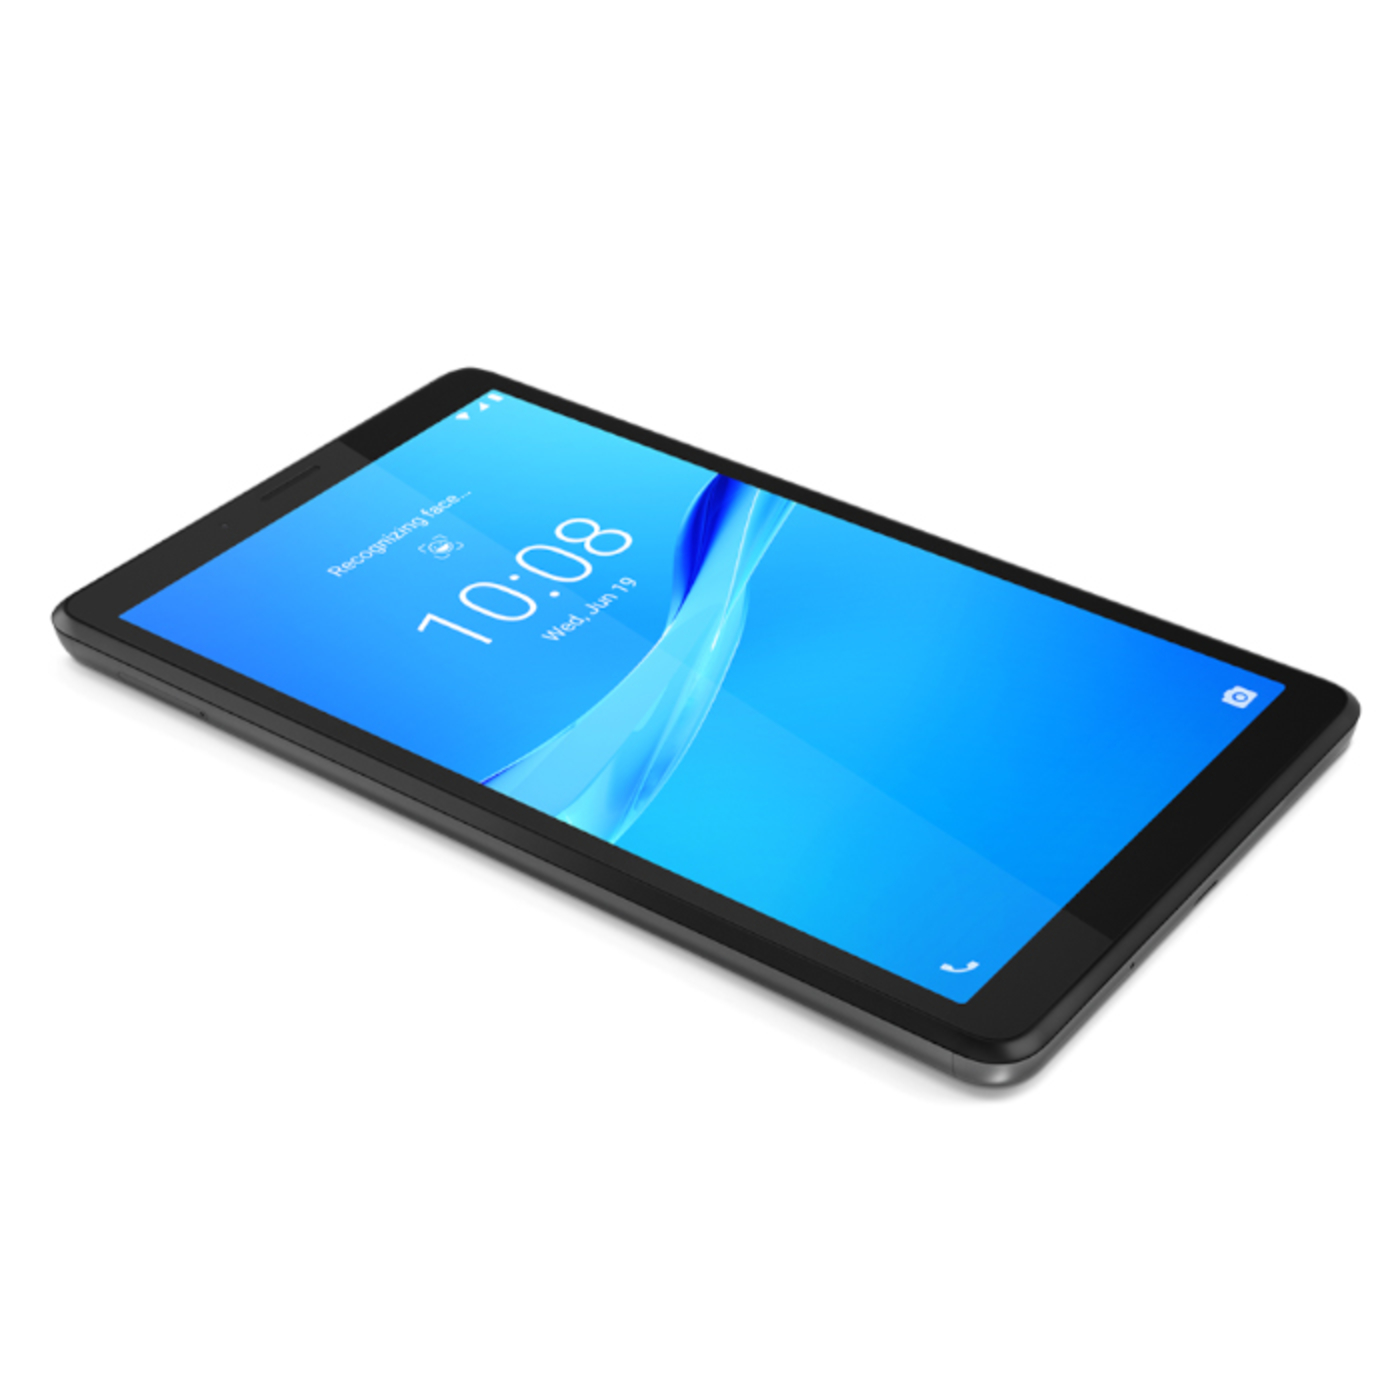 Tablet LENOVO 7" Pulgadas M7 LTE color Gris